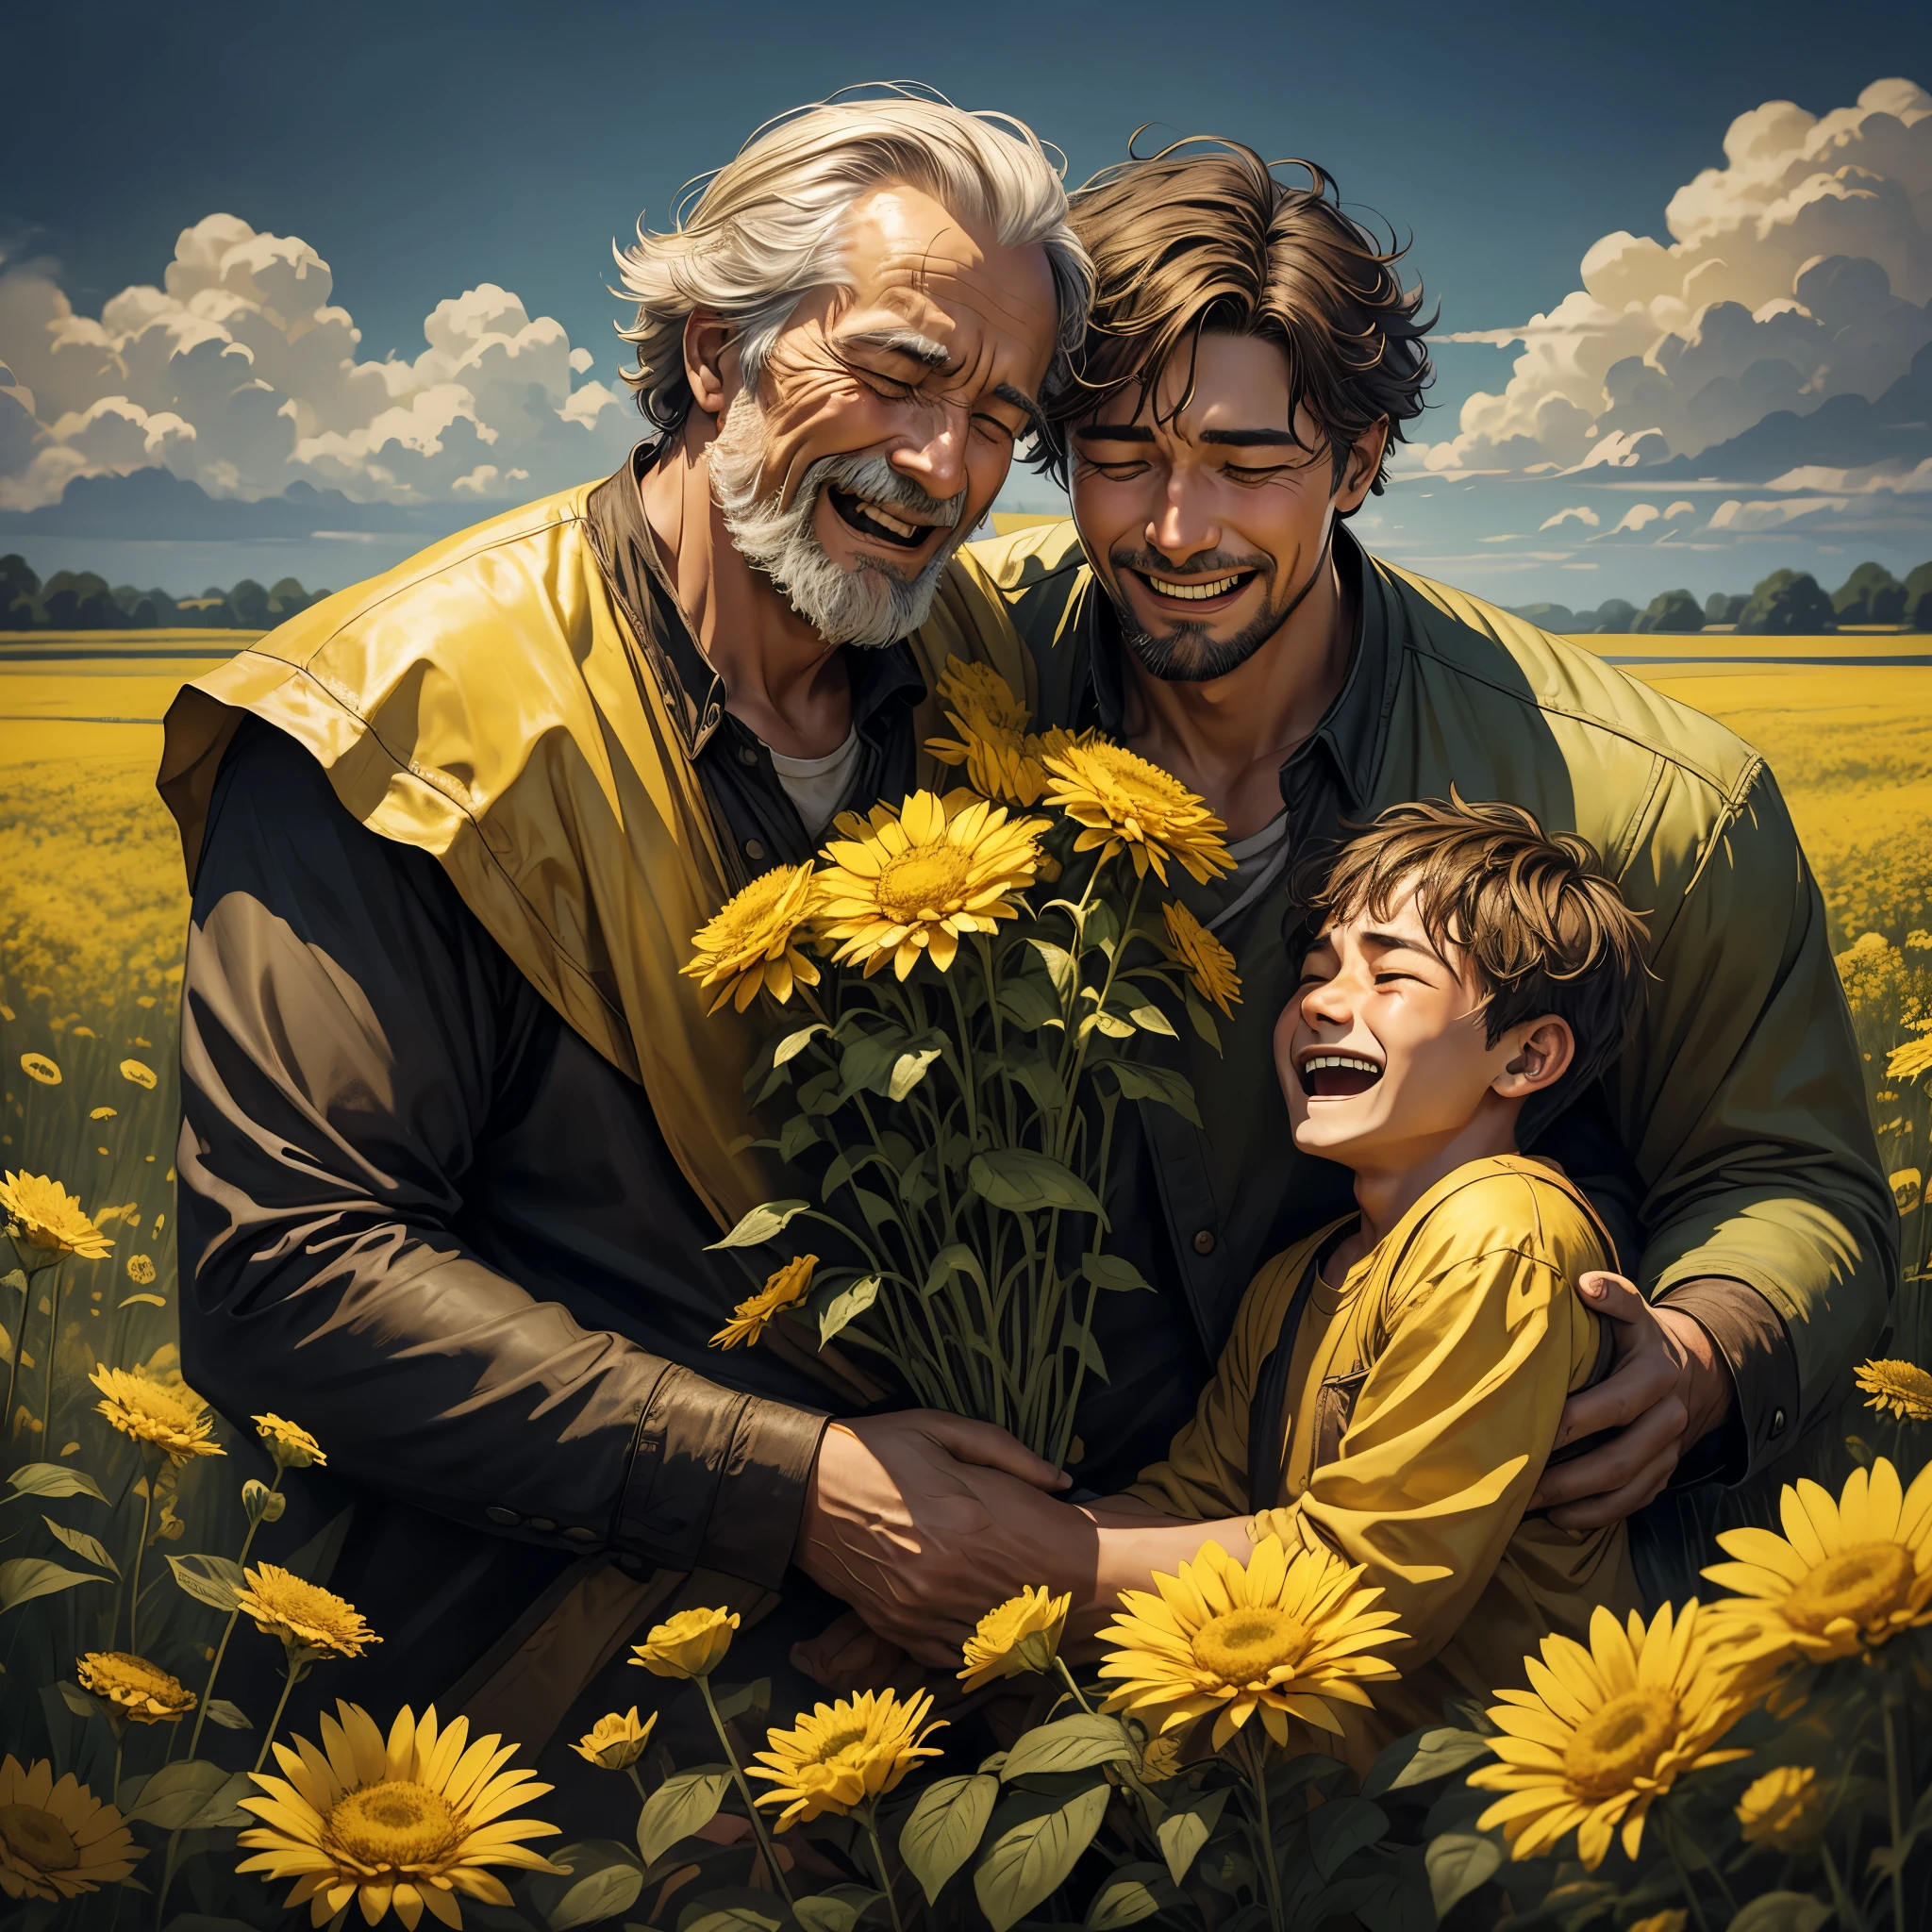 노란 꽃이 가득한 들판에서 포옹하는 아버지와 탕자 . 노인과 청년, 아버지는 기뻐서 울고, 청년은 기뻐서 우는구나. 